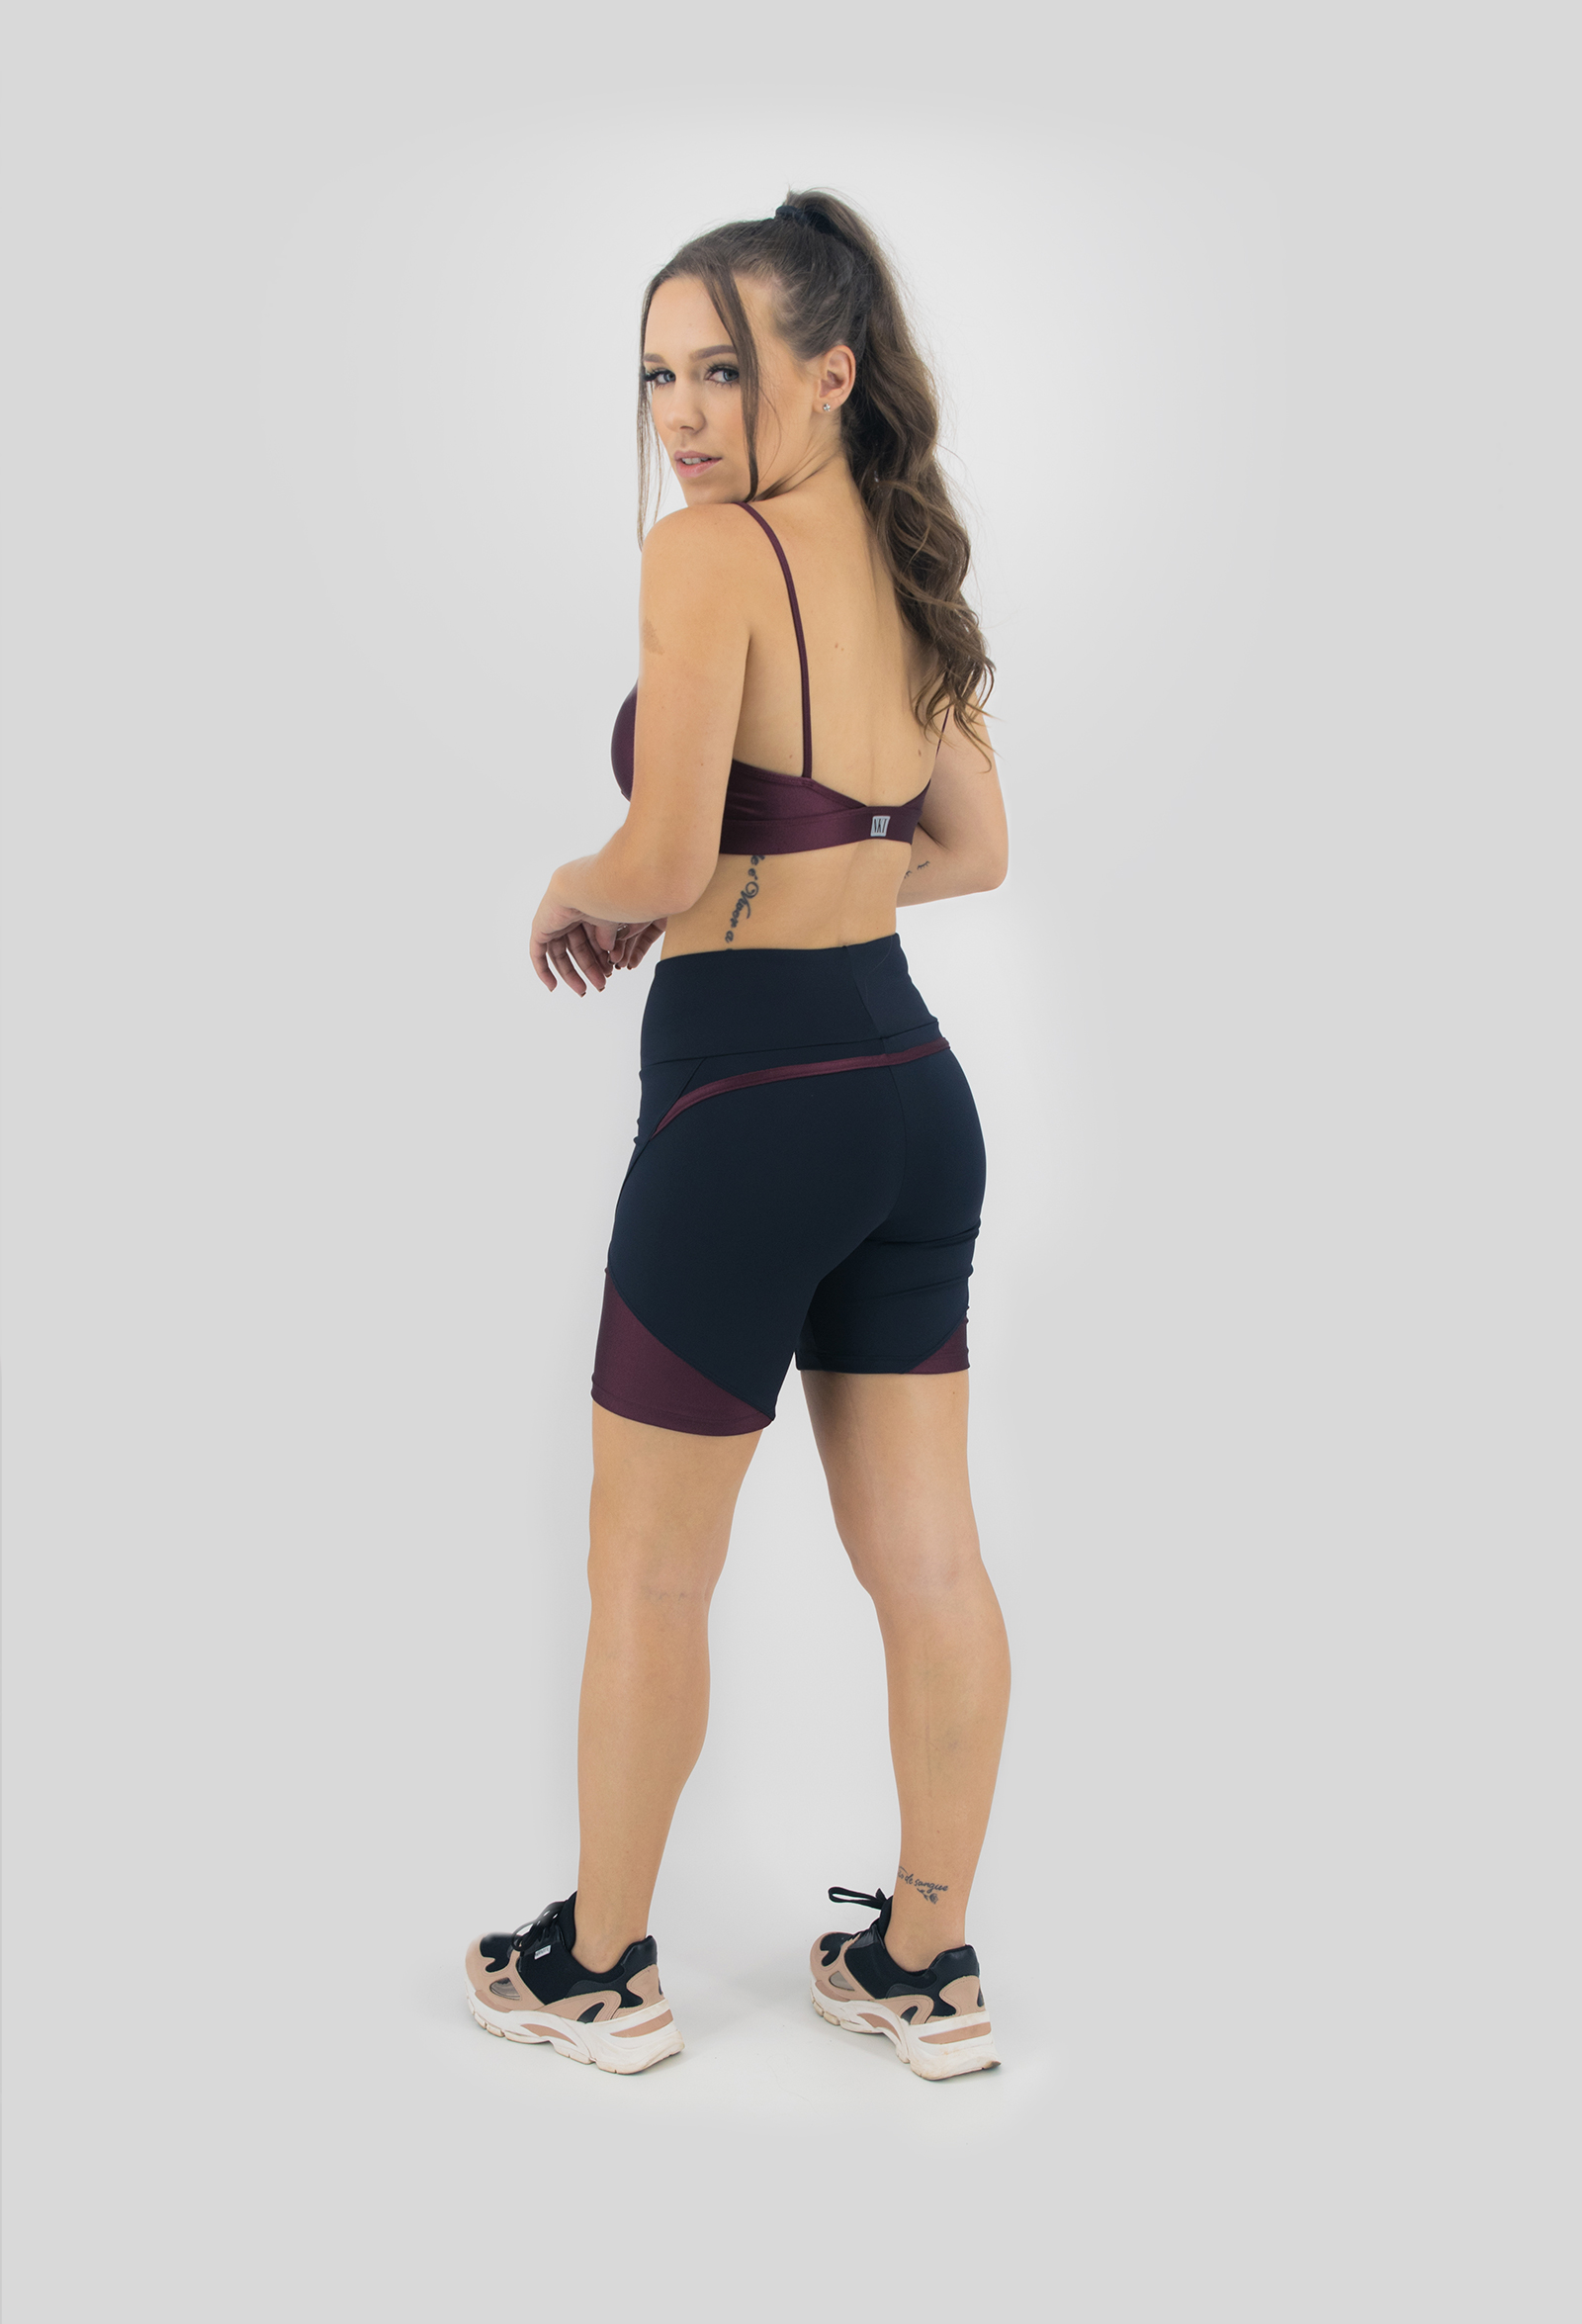 Top Profusion Bordo, Coleção Move Your Body - NKT Fitwear Moda Fitness